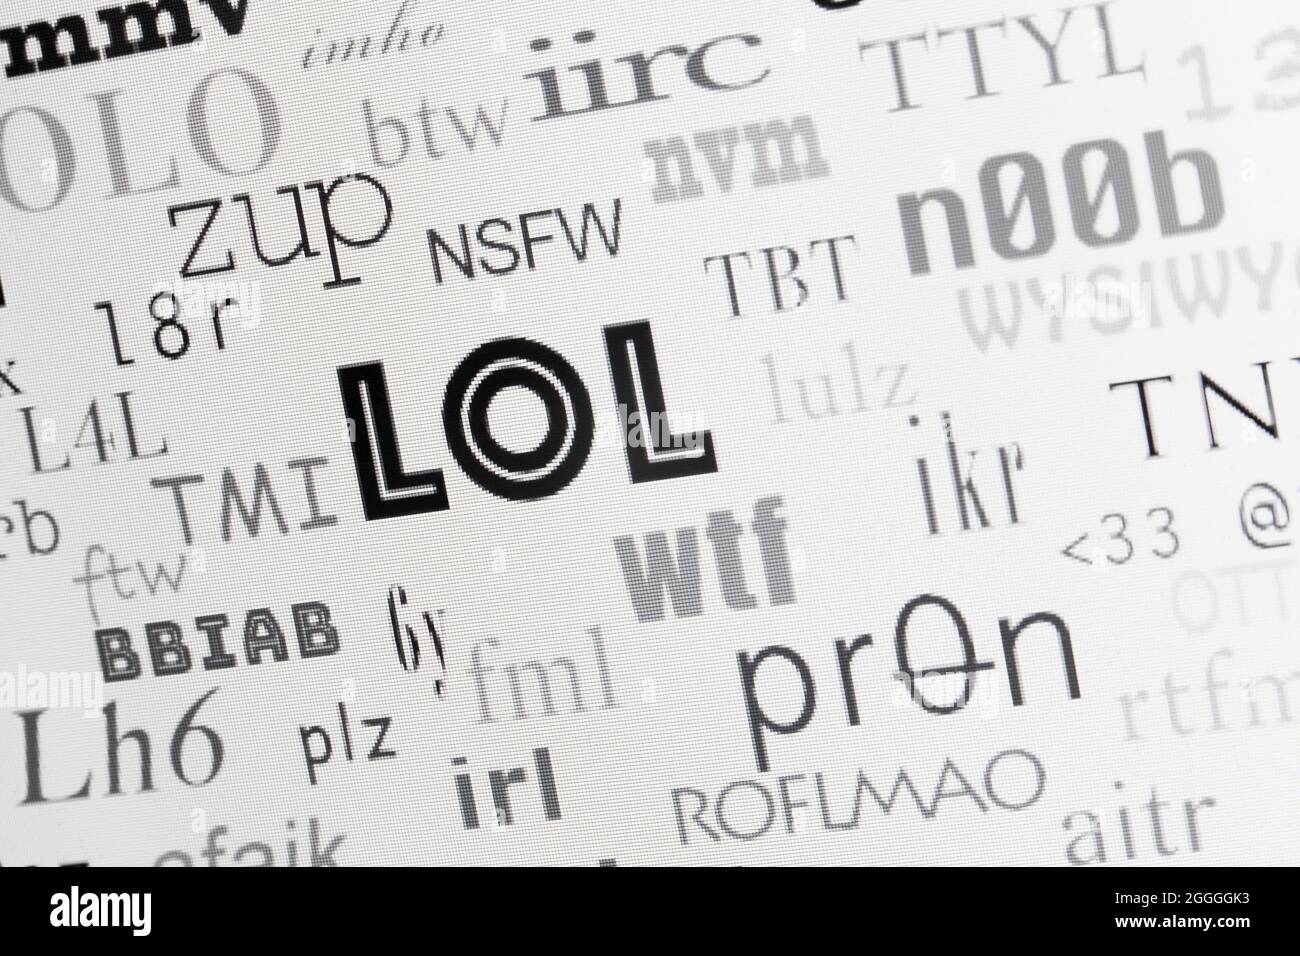 LOL y otros acrónimos de Internet comúnmente utilizados en la pantalla (idioma de Internet, idioma de texto, acrónimo de texto) - EE.UU Foto de stock